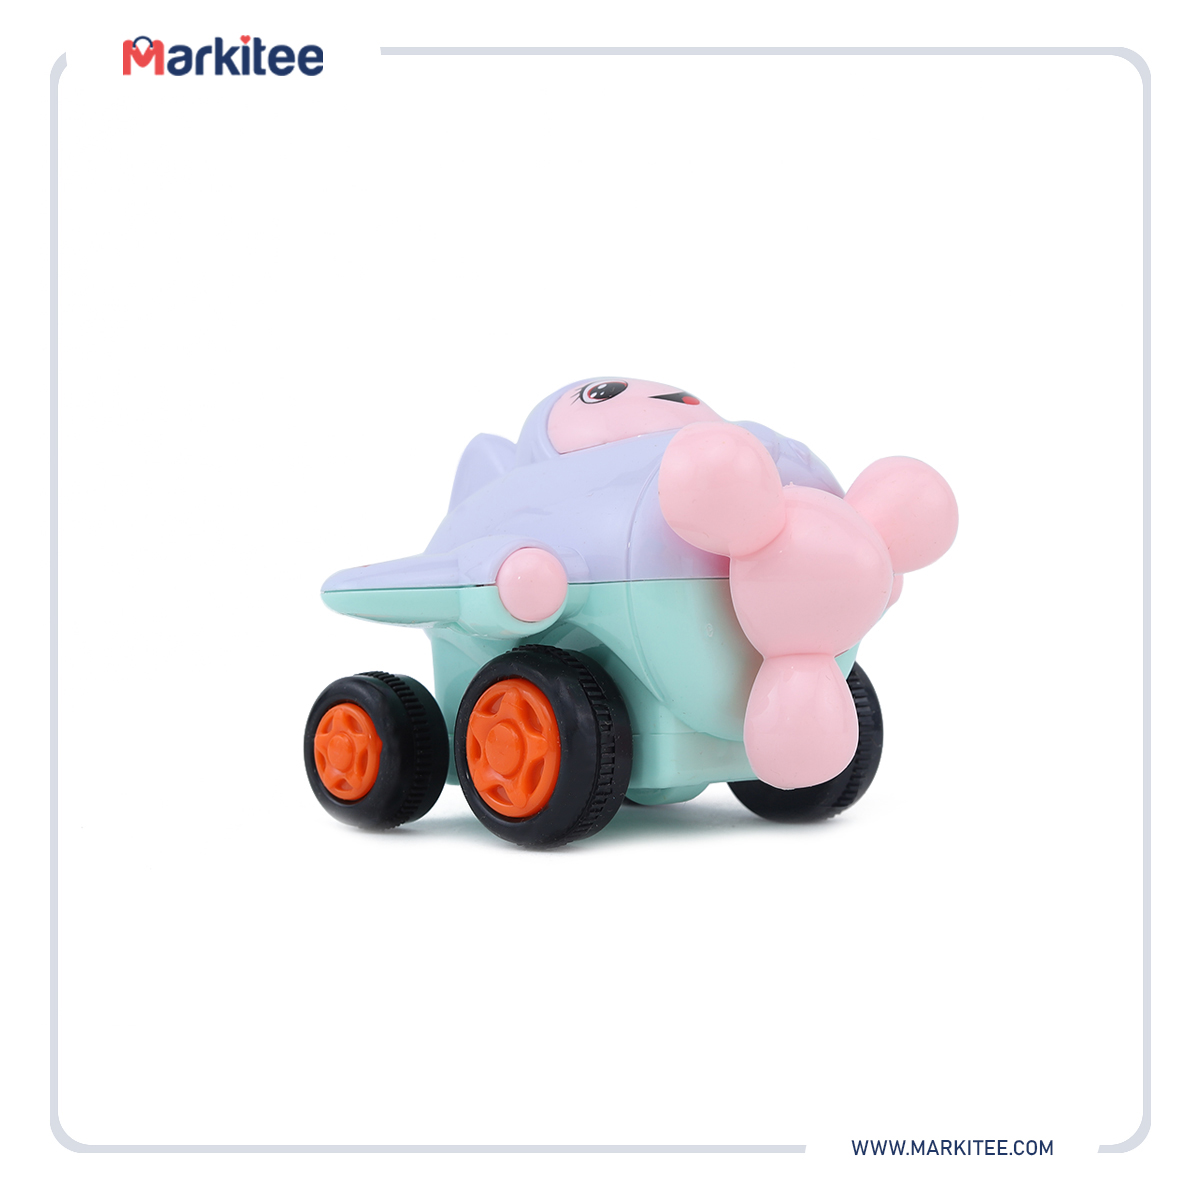 ماركيتي-markitee-20220531030133524_Markitee-Toys-TY157-4(2).jpg